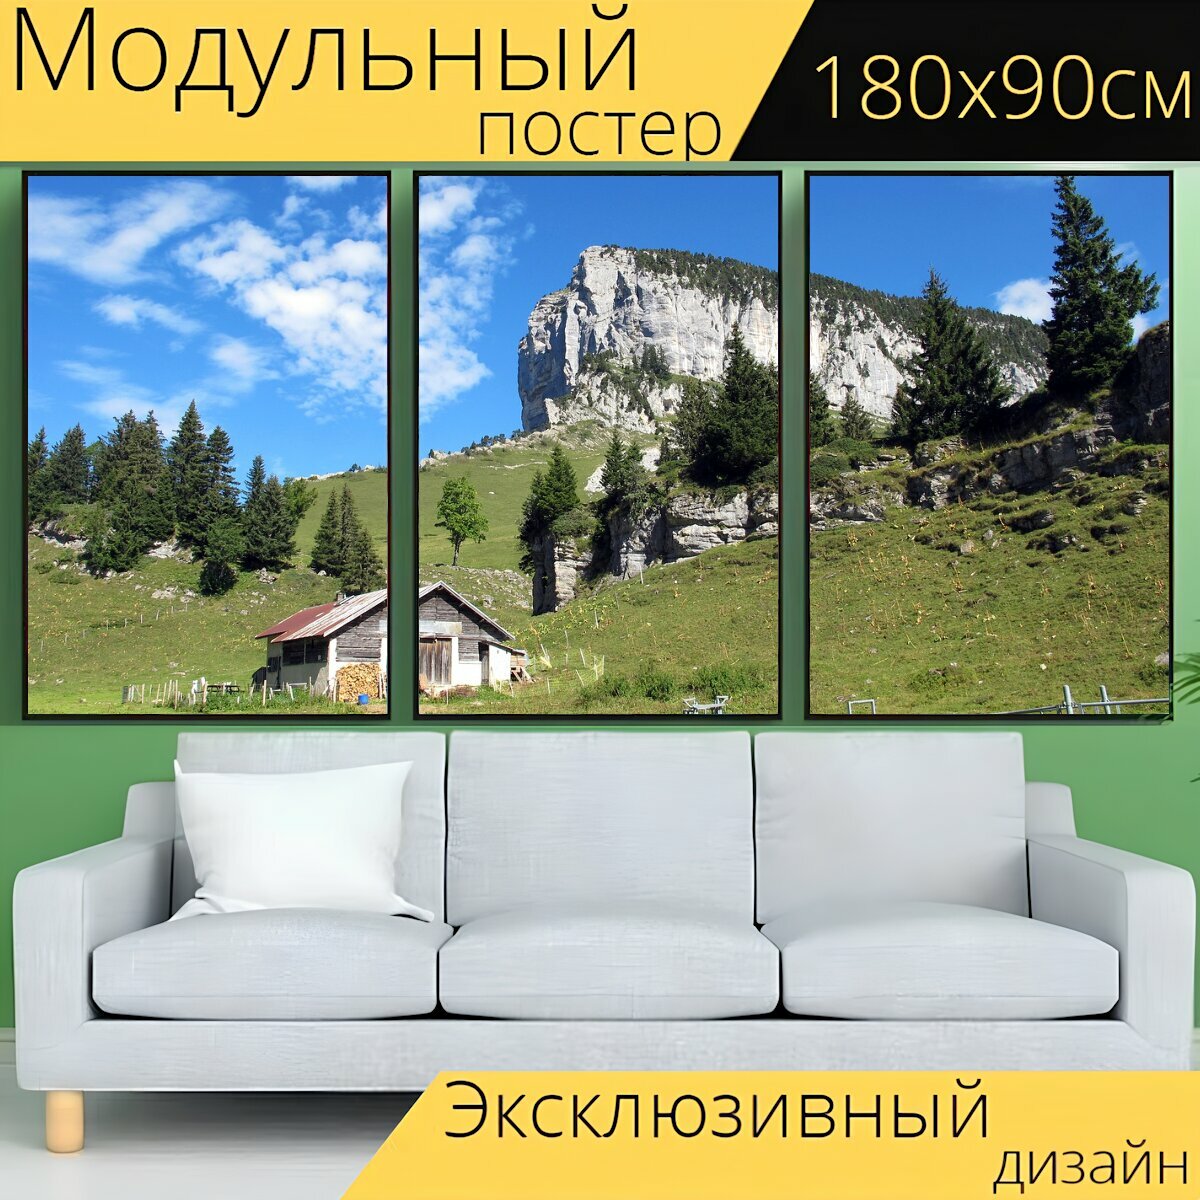 Модульный постер "Альпийское шале, дом, поле" 180 x 90 см. для интерьера